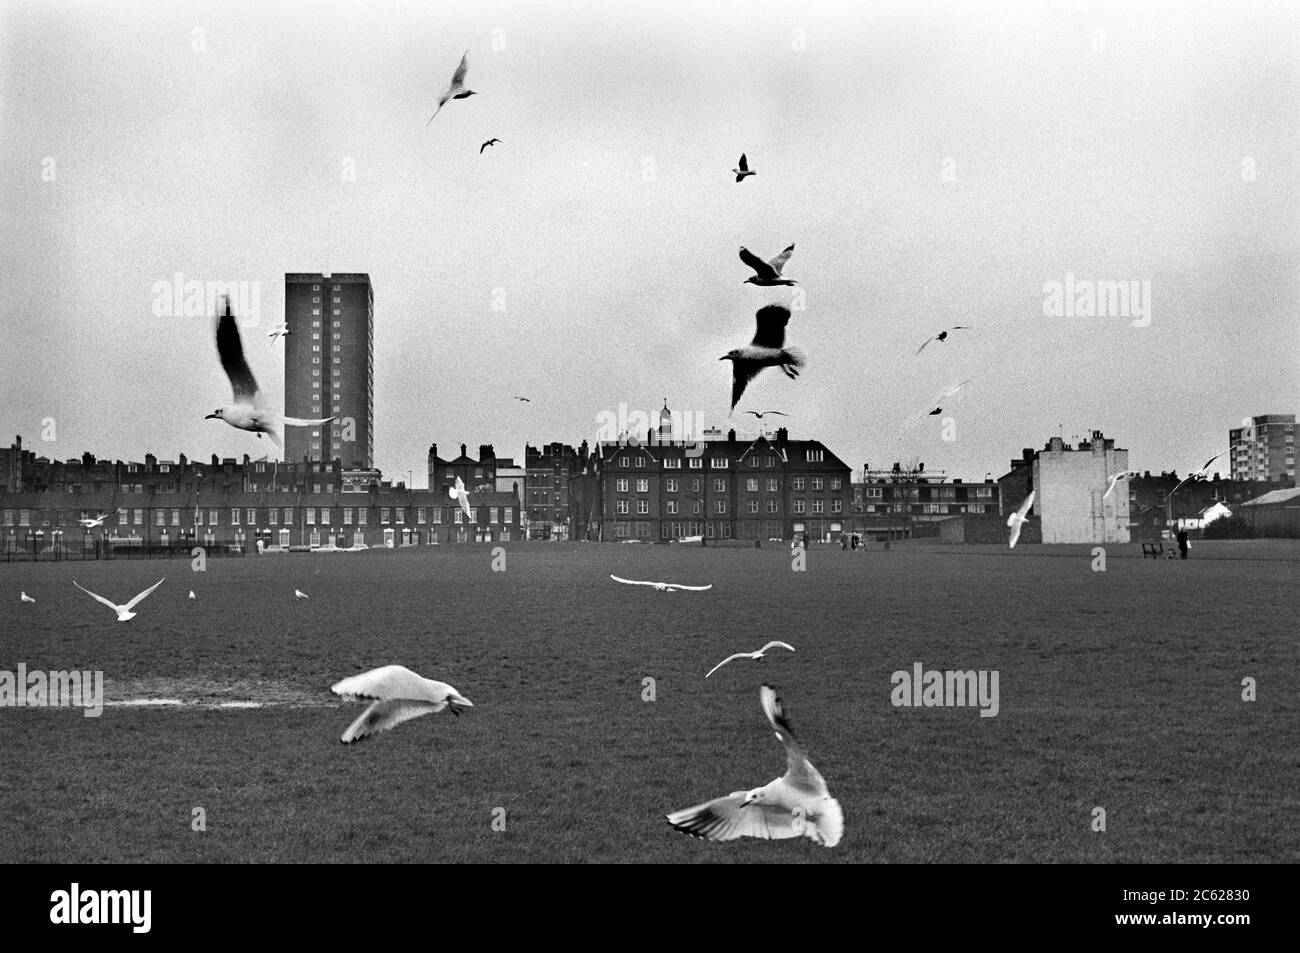 Seagulls à la recherche de nourriture, urbain Whitechapel est de Londres Angleterre 1975. ANNÉES 1970 ROYAUME-UNI HOMER SYKES Banque D'Images